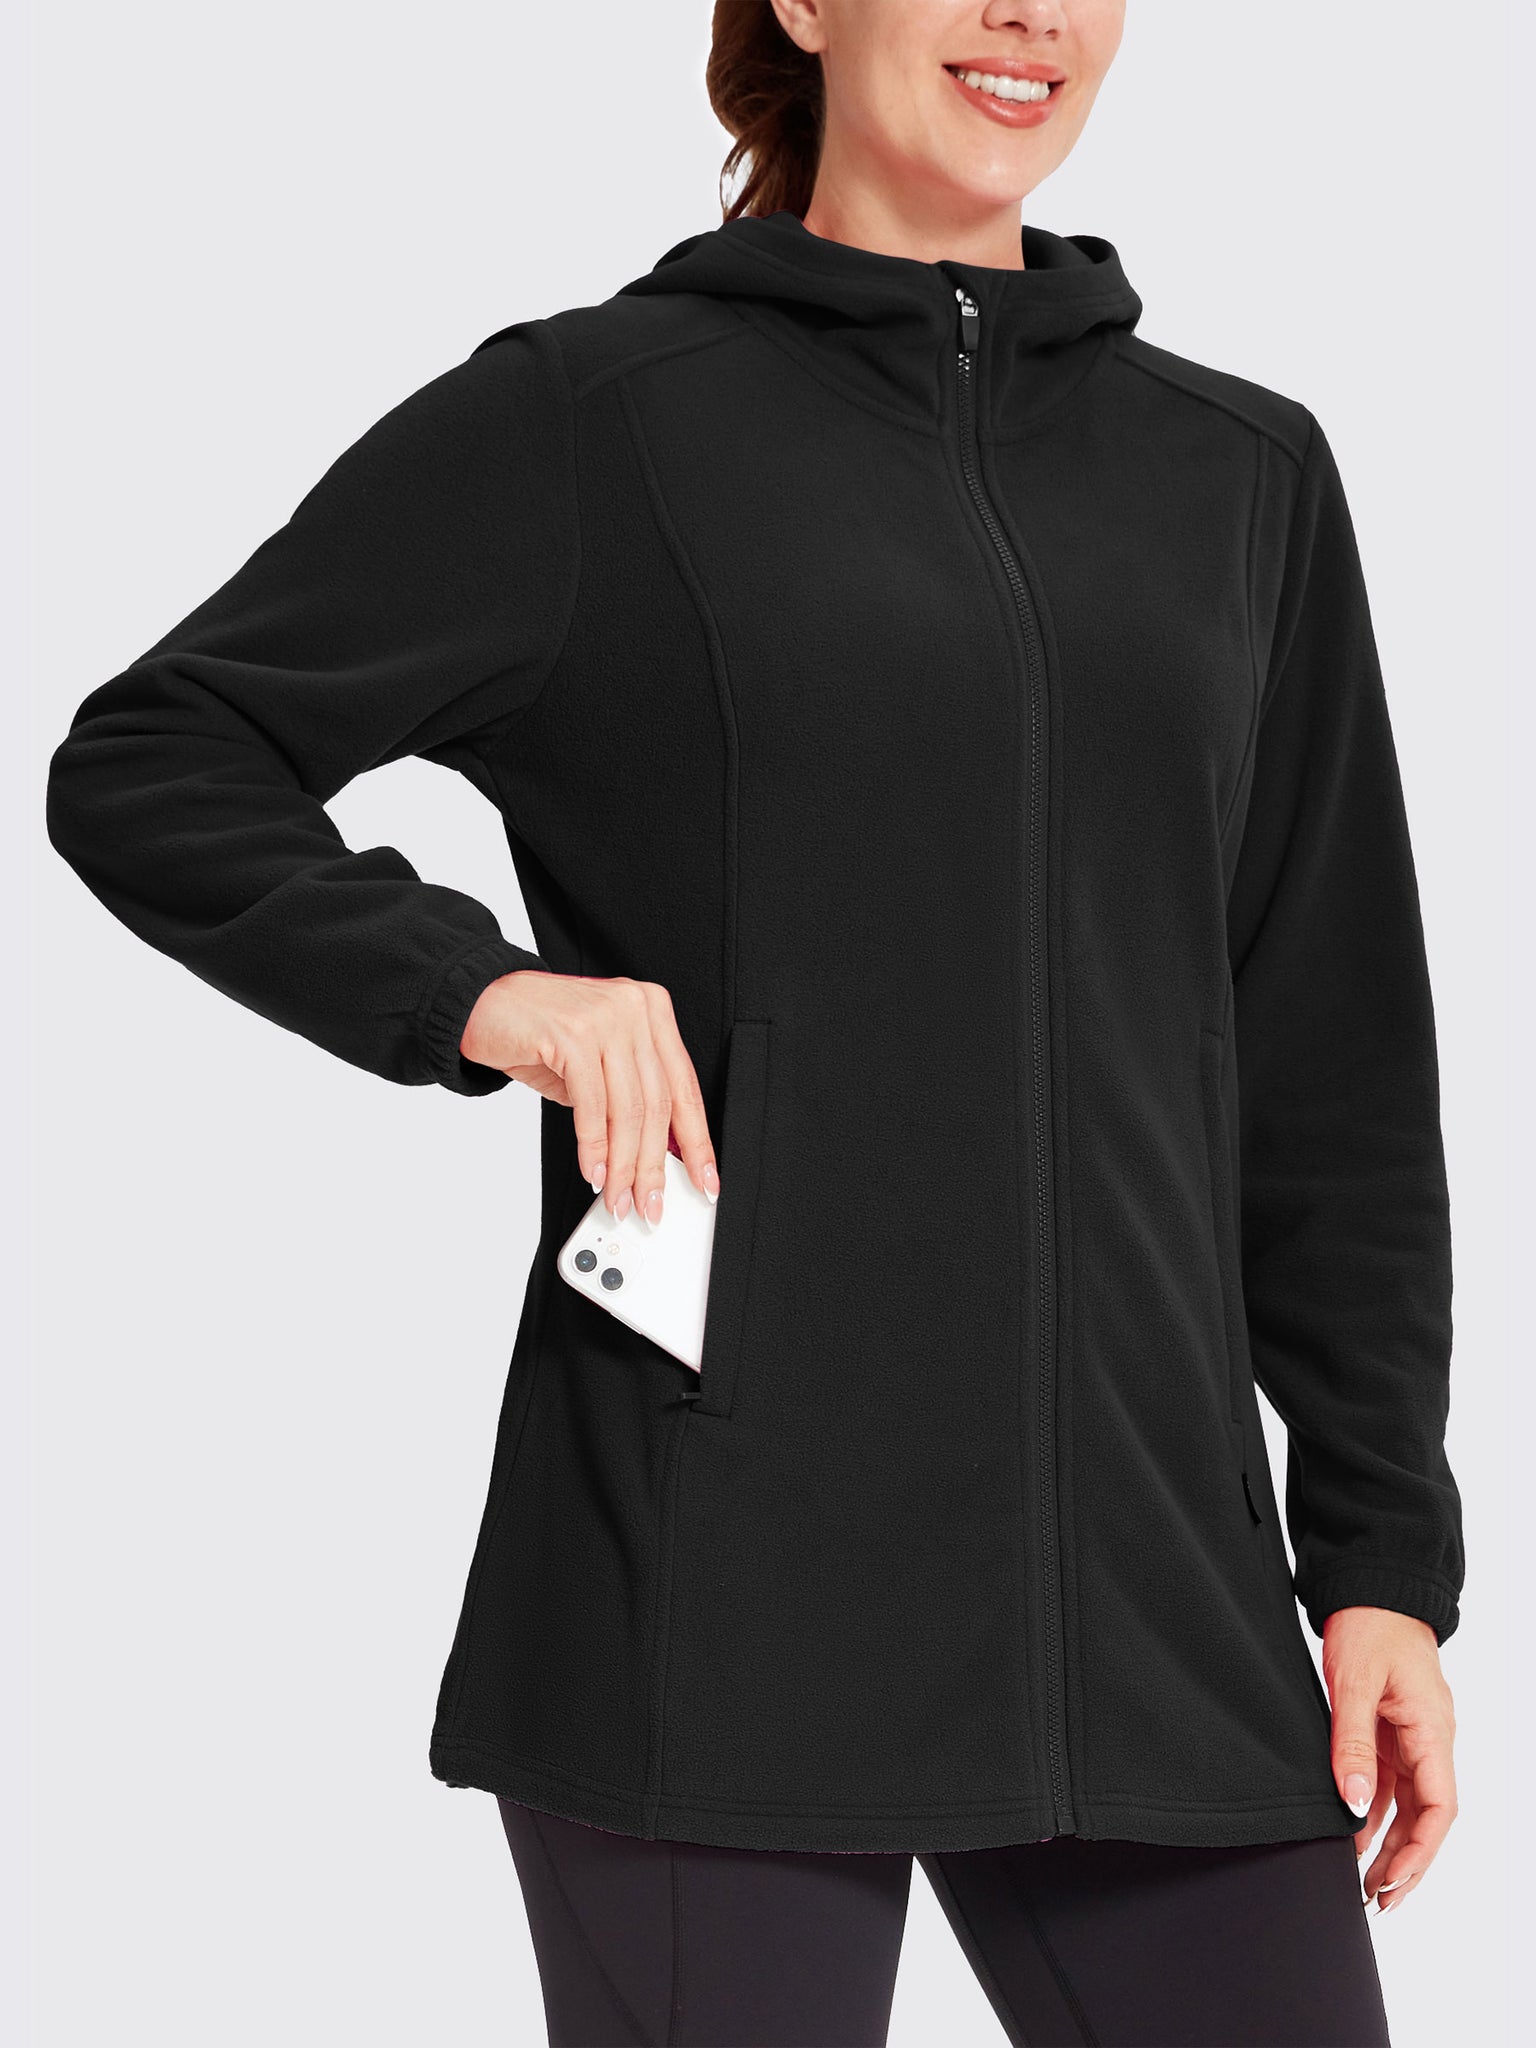 Women's Fleece Full-Zip Jacket Black1